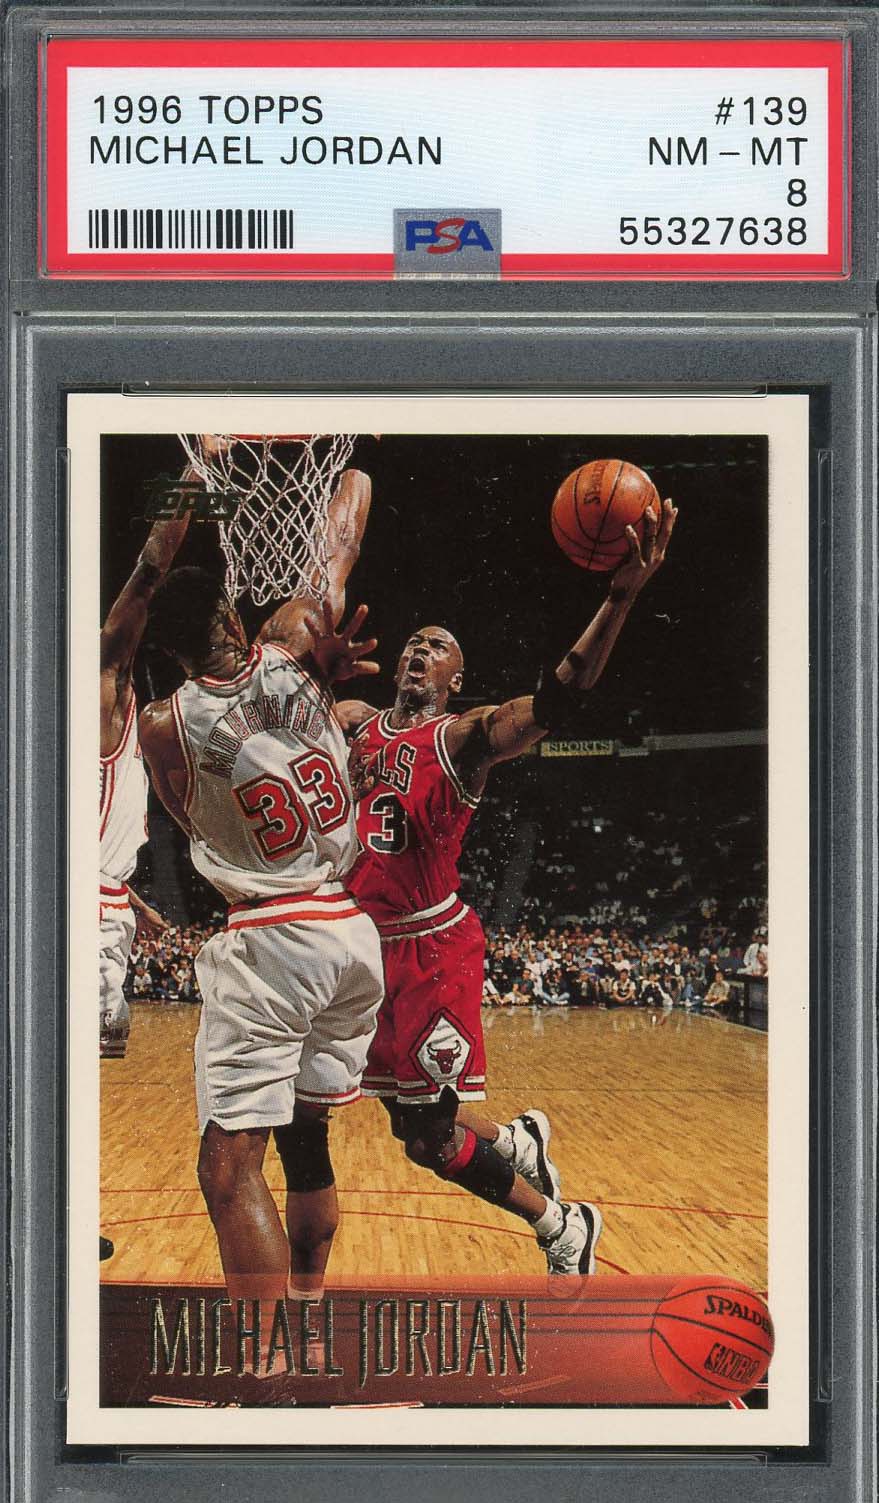 マイケル ジョーダン 1996 トップス バスケットボール カード #139